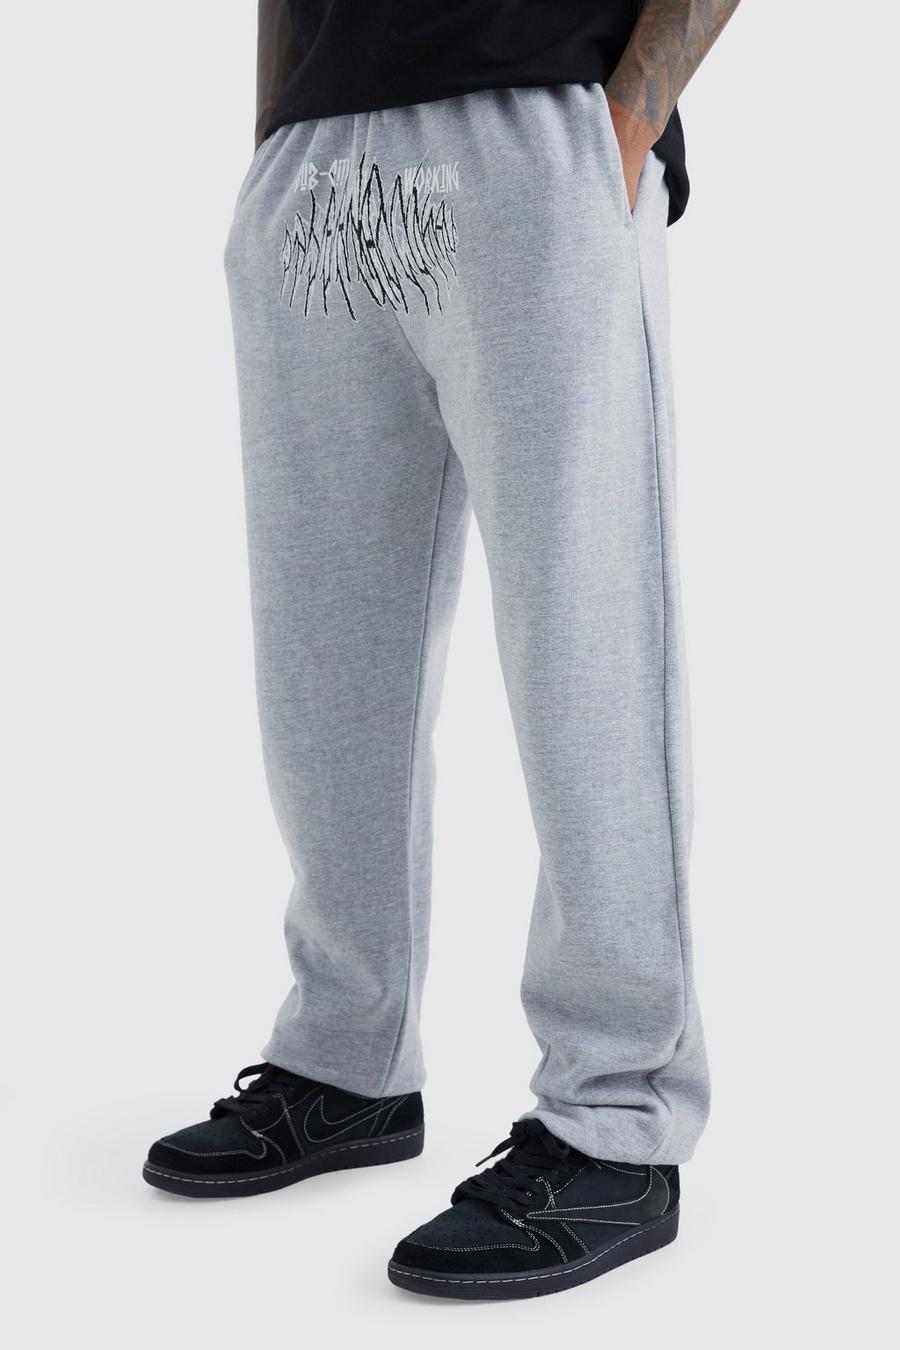 Pantaloni tuta con grafica Sub City, Grey marl grigio